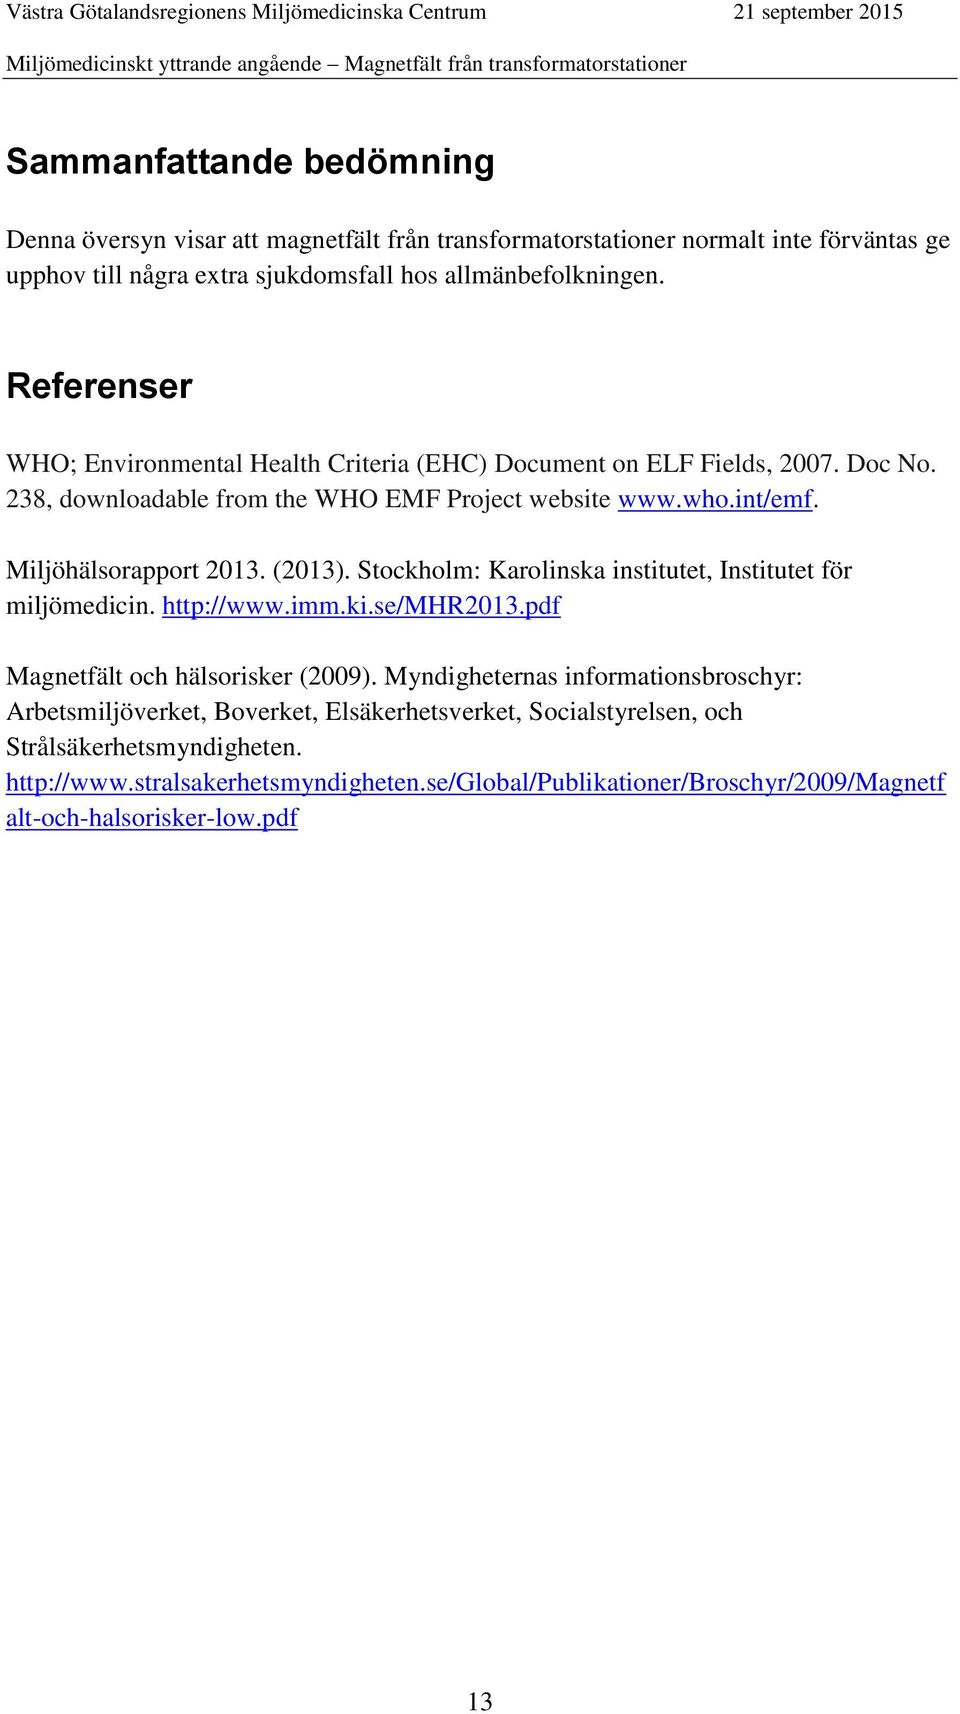 (2013). Stockholm: Karolinska institutet, Institutet för miljömedicin. http://www.imm.ki.se/mhr2013.pdf Magnetfält och hälsorisker (2009).